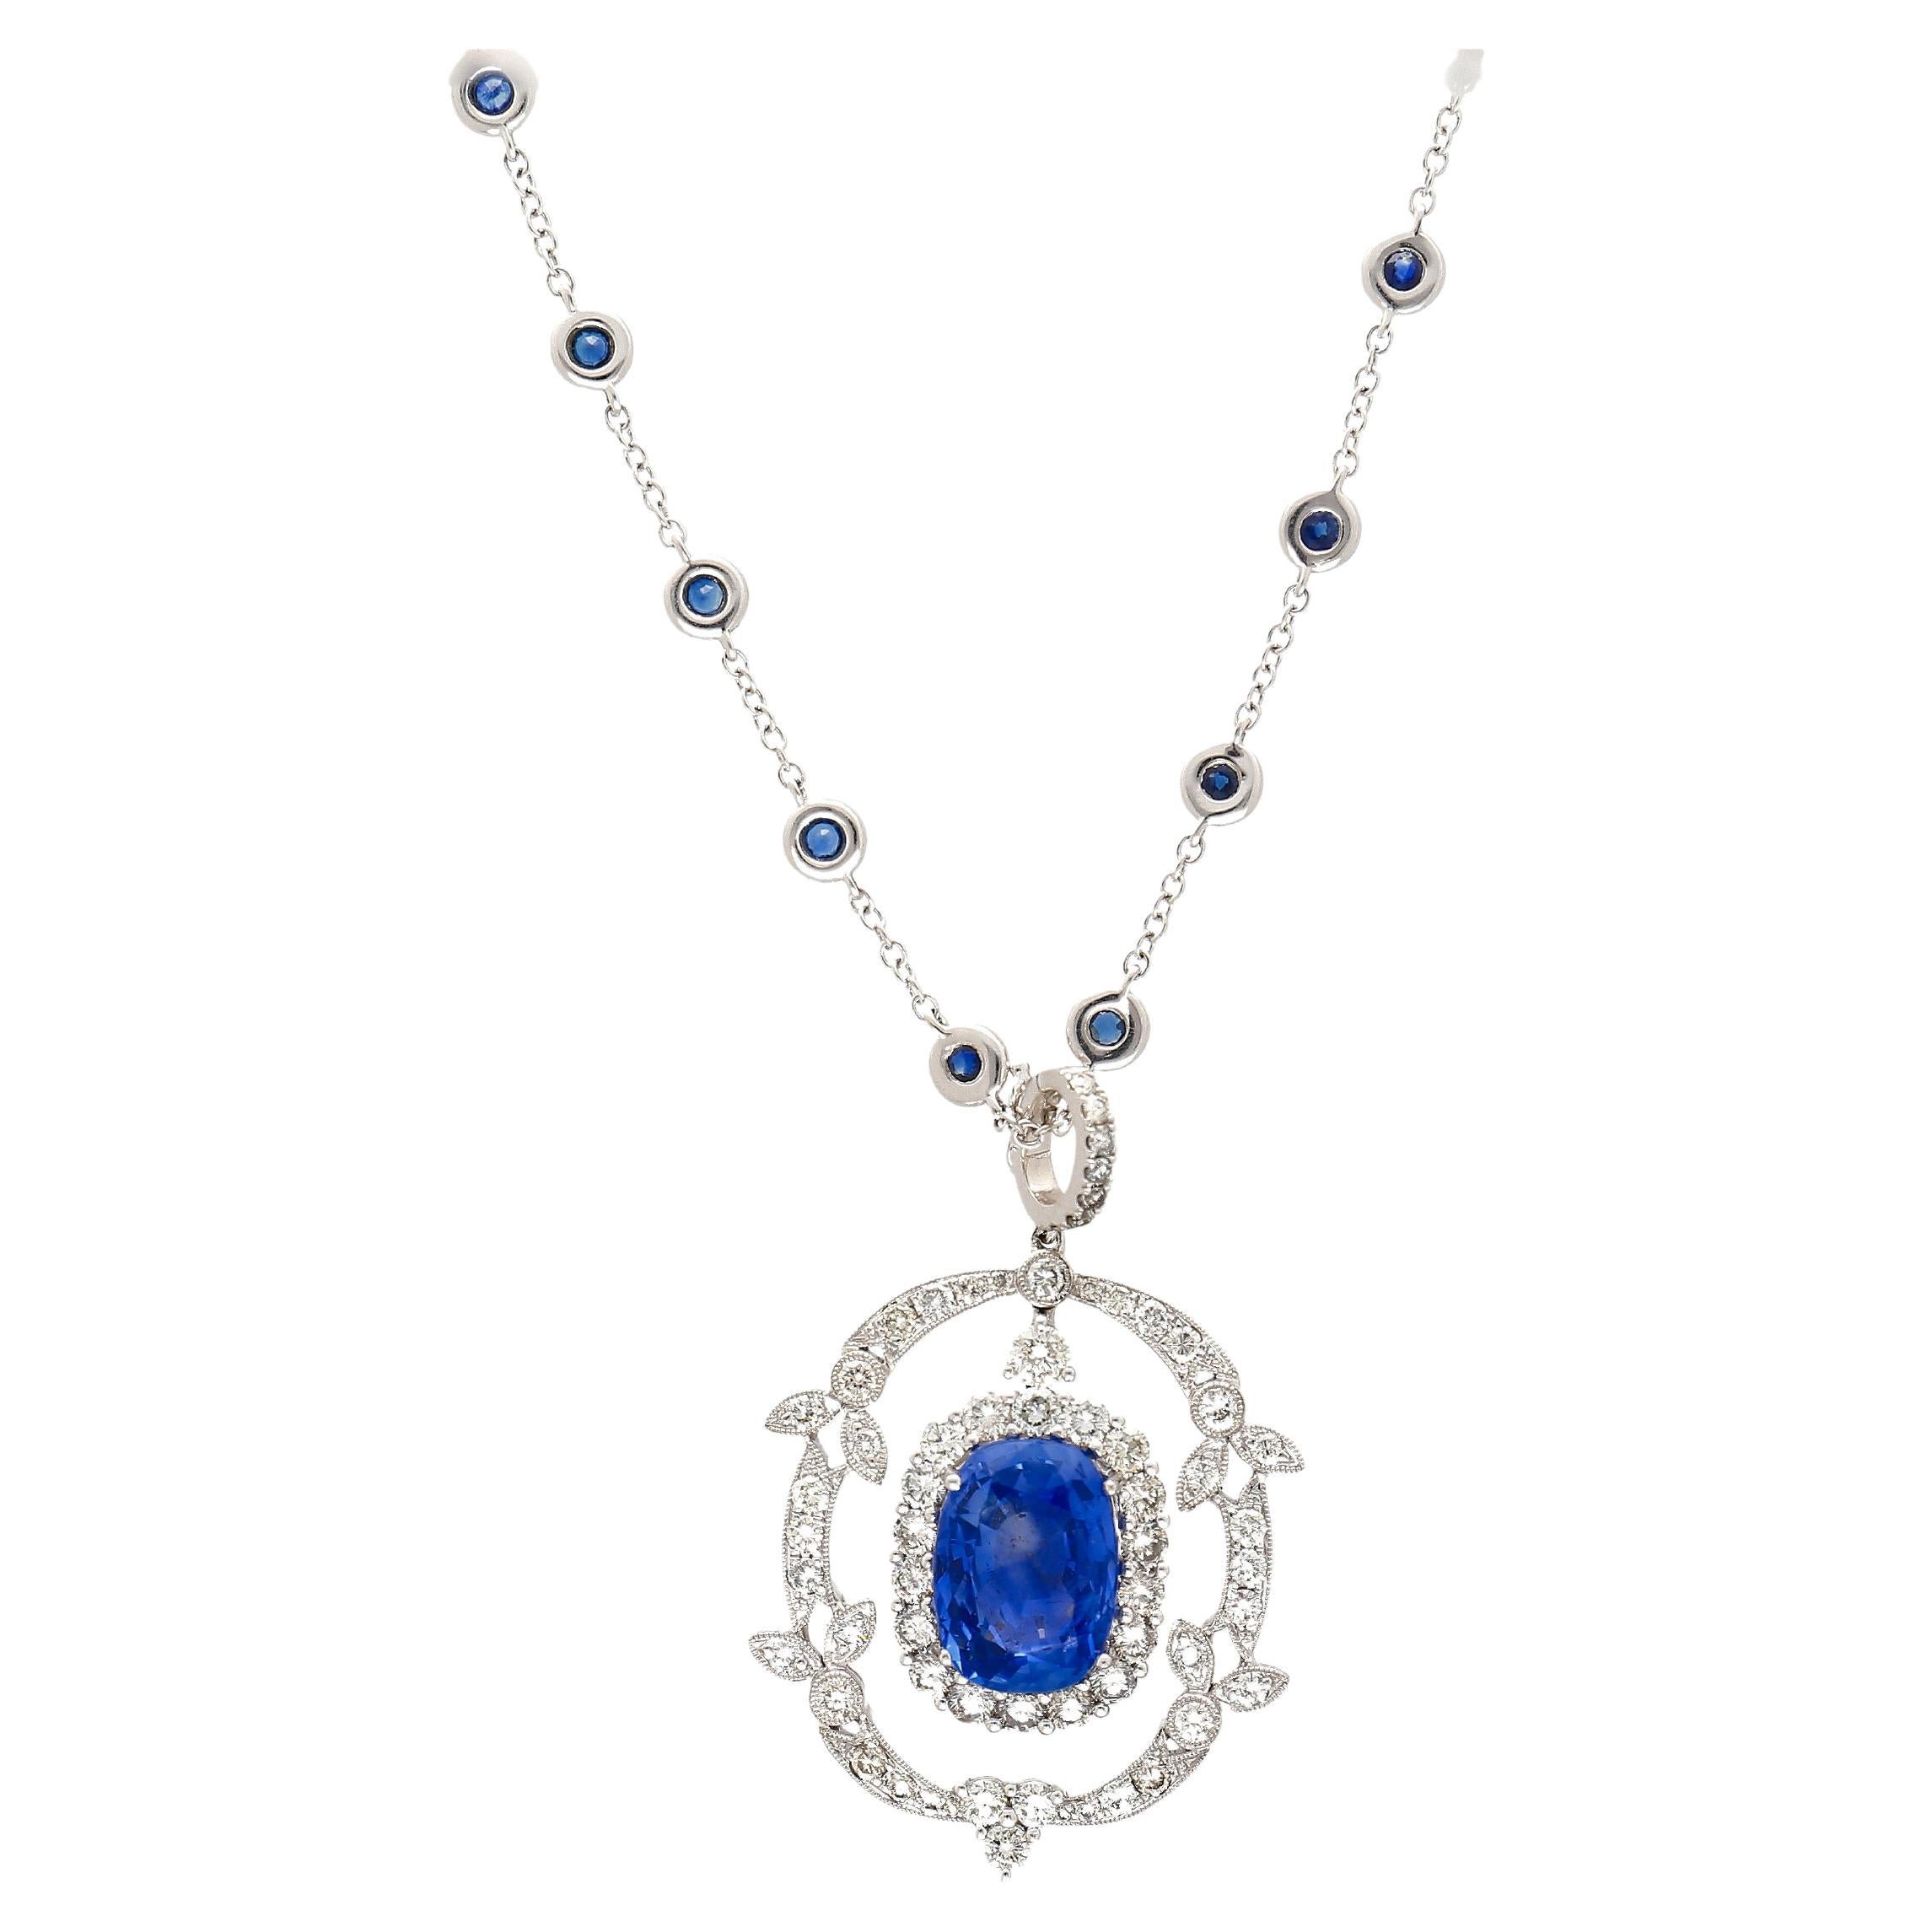 10.36 Carat Oval Cut No Heat Sri Lanka Blue Sapphire Drop Pendant Necklace For Sale